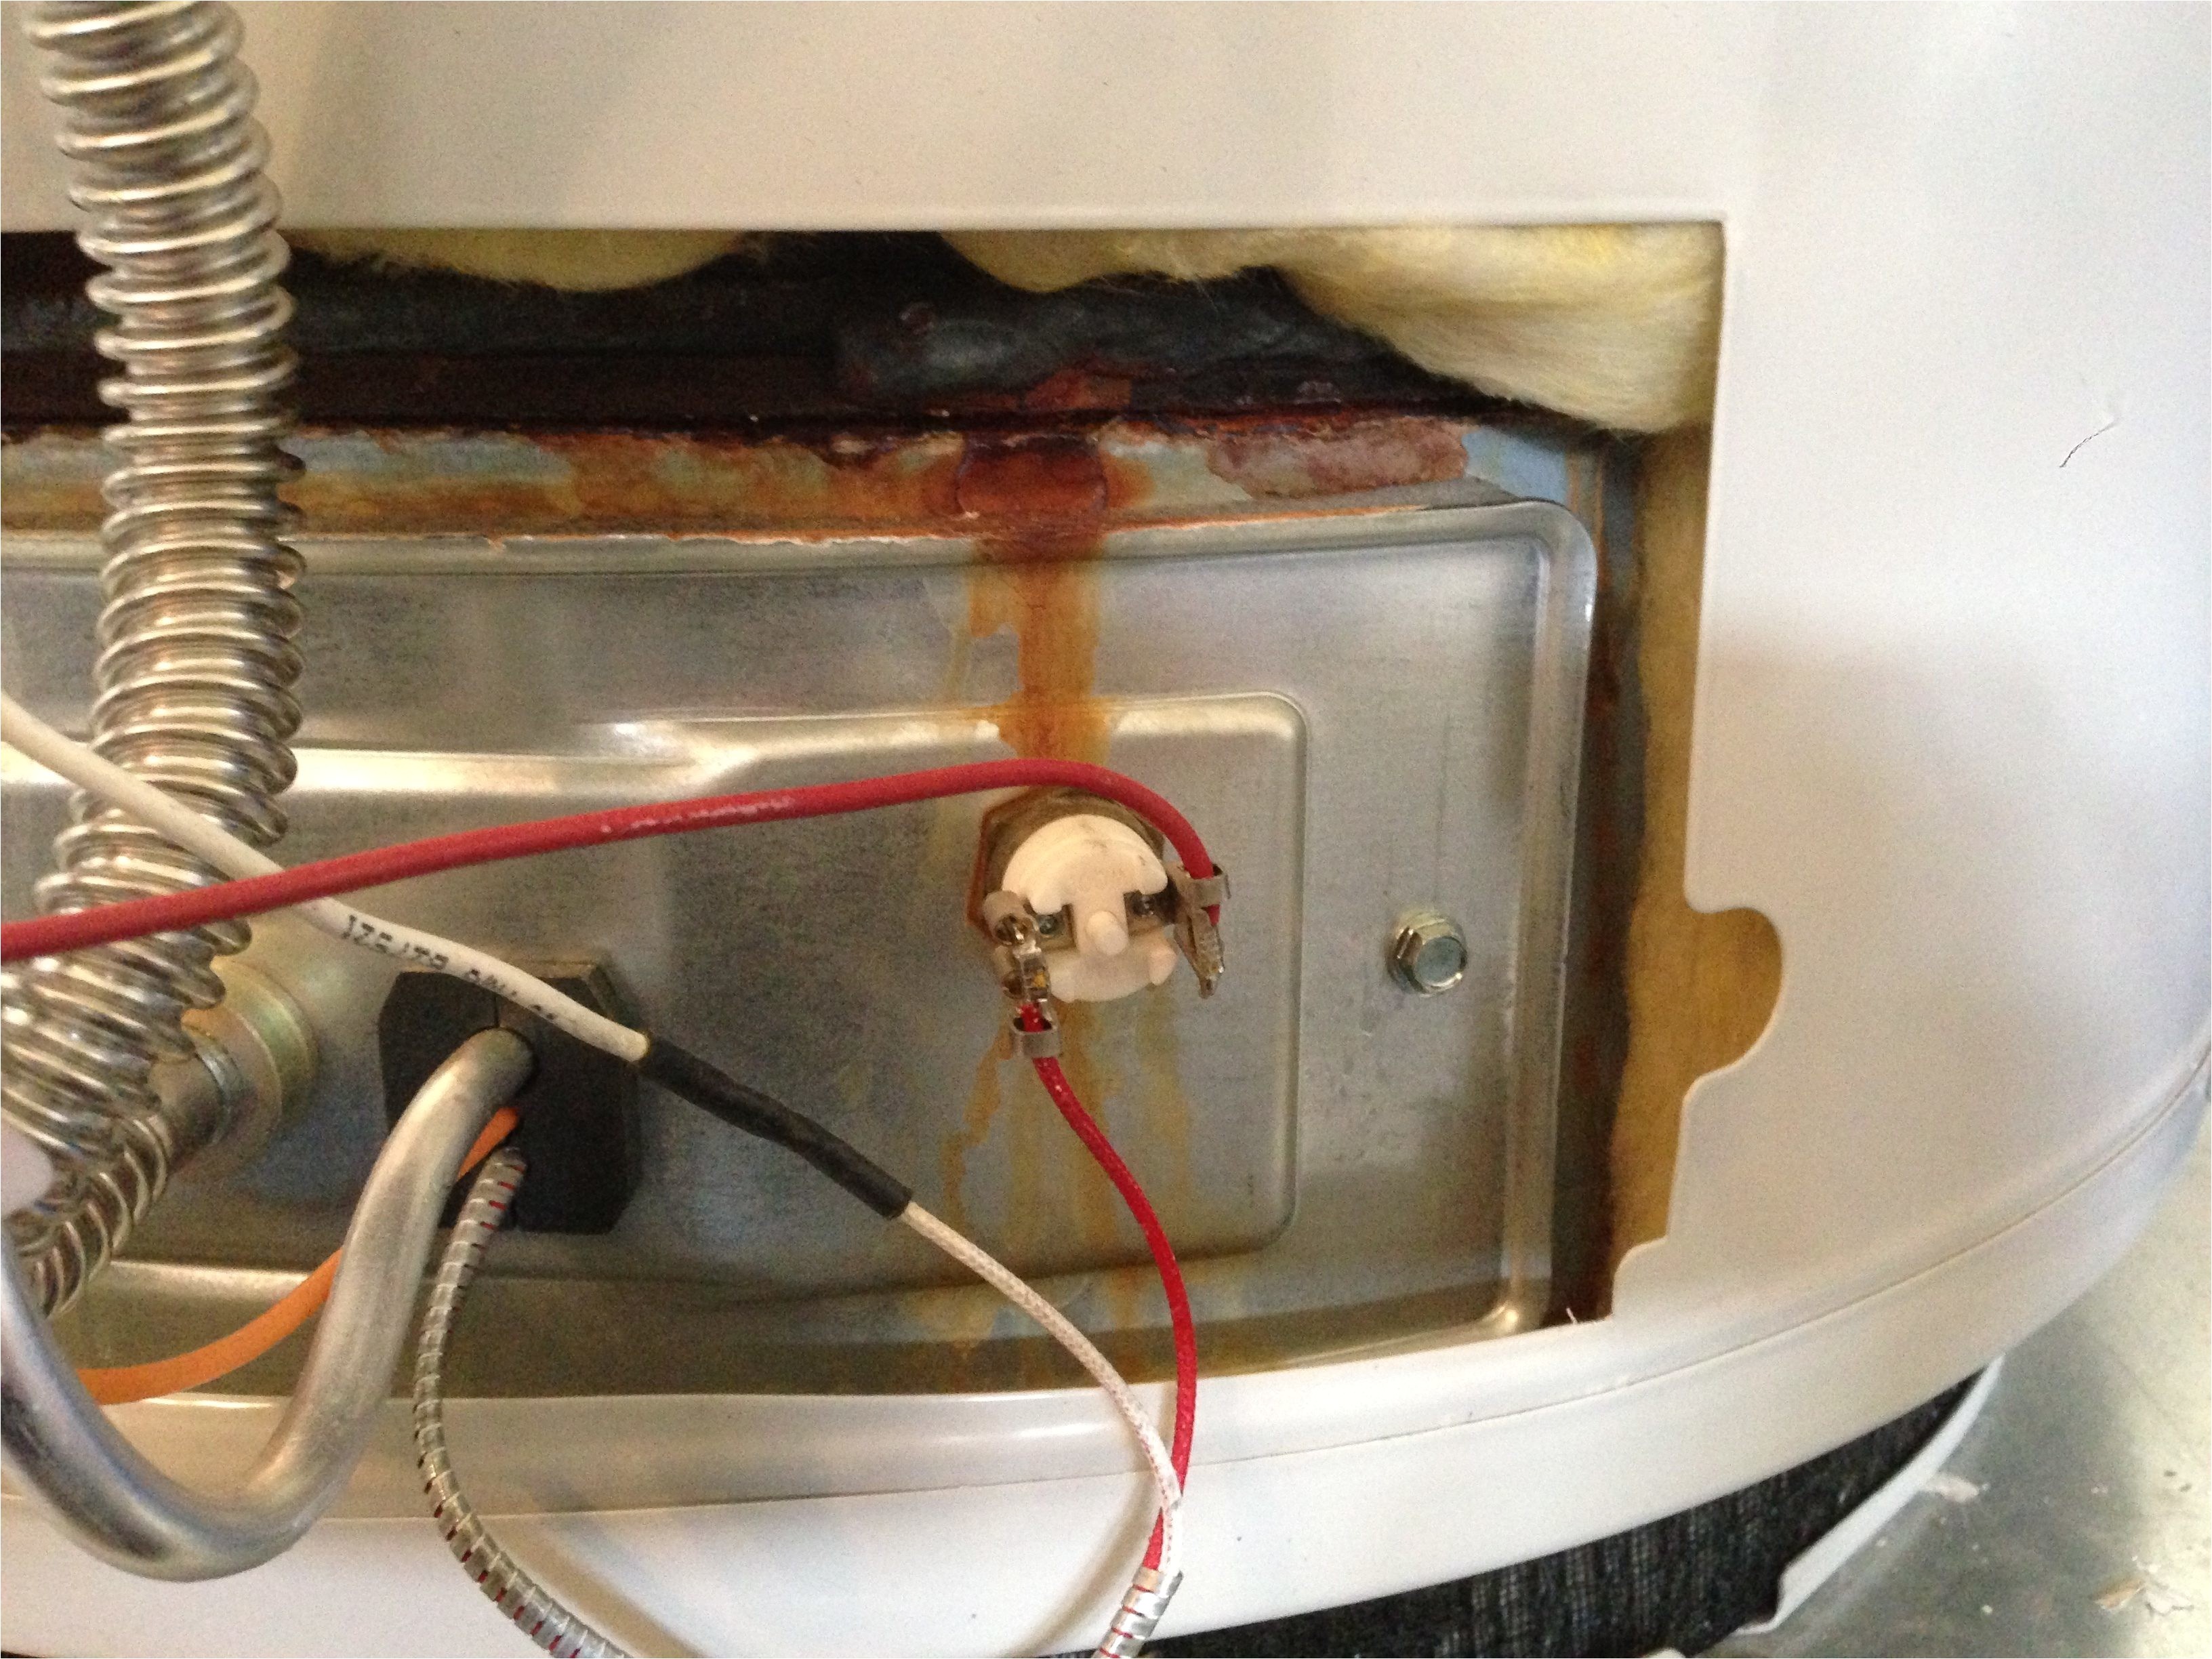 ao smith 40 gallon water heater wiring diagram